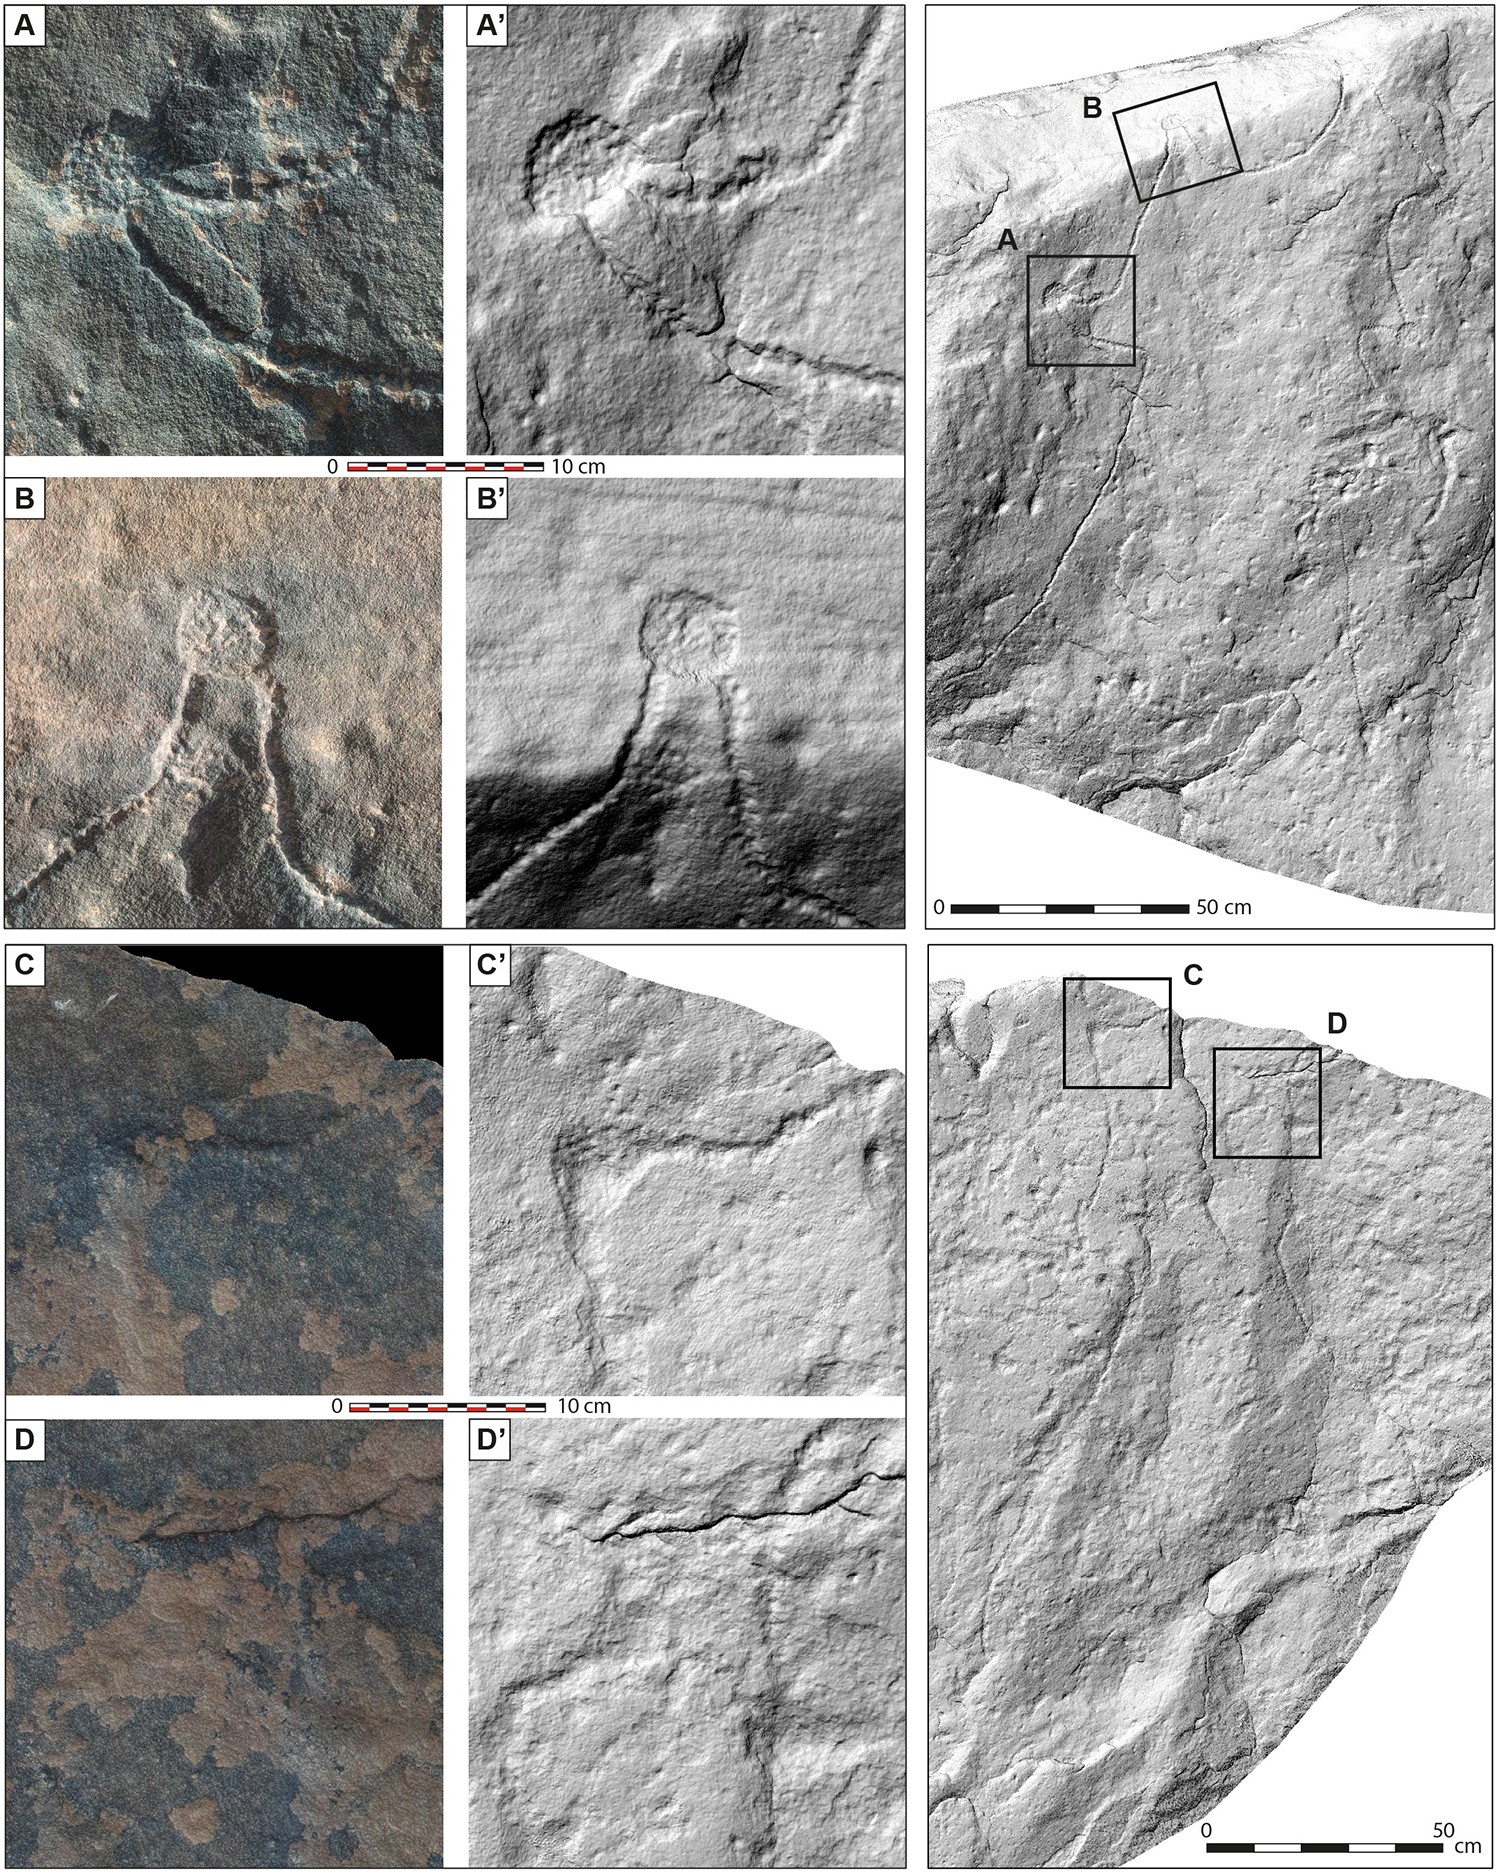 Fotografias detalhadas e modelos de superfície sombreada de colinas da superfície de pedra gravada de Jebel az-Zilliyat, Arábia Saudita — Foto: Rémy Crassard et.al